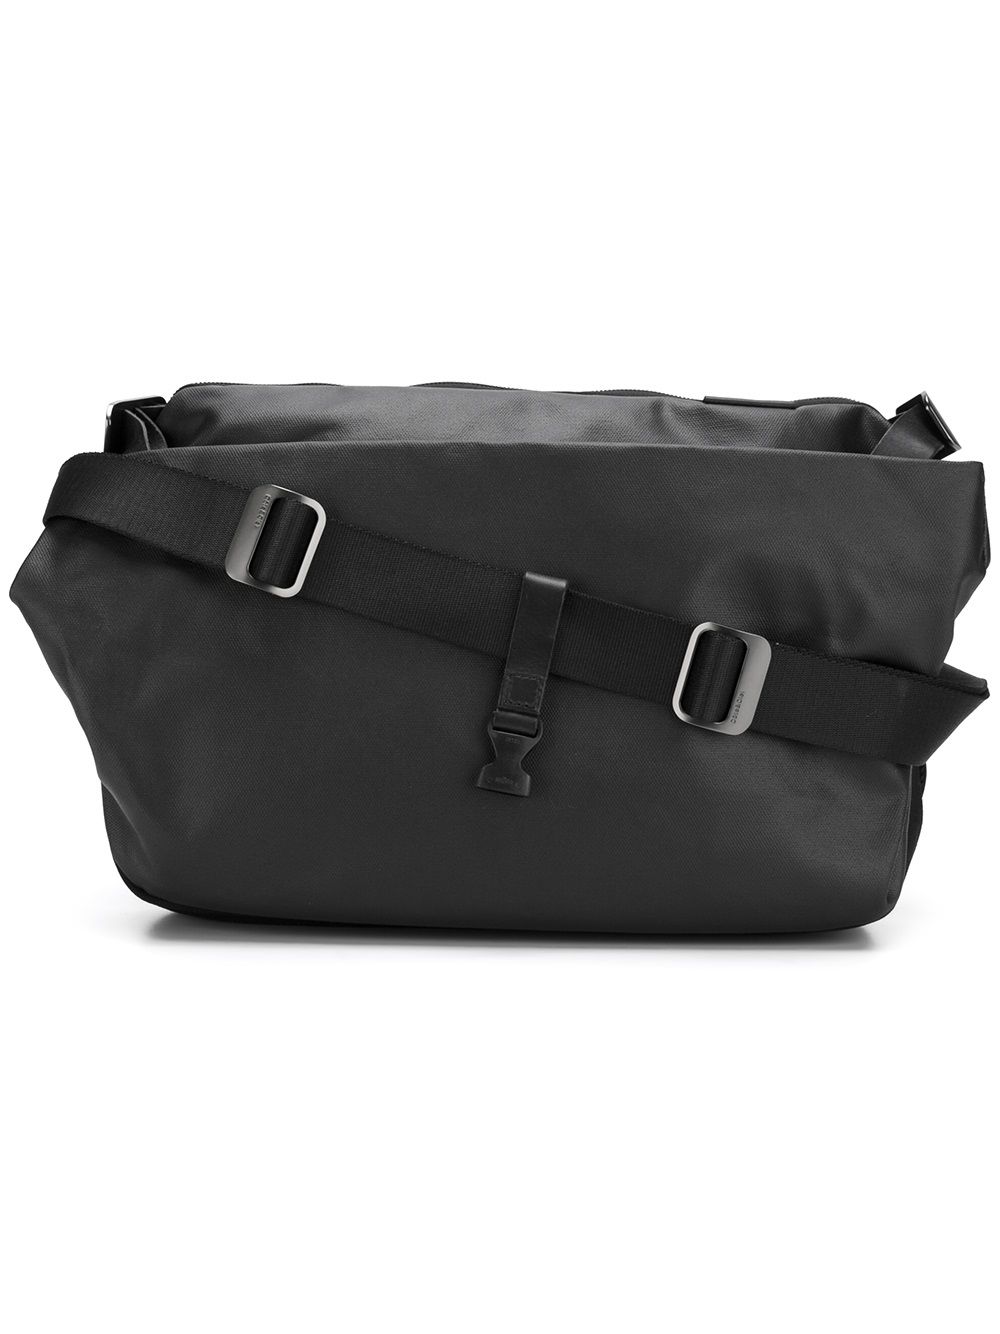 Côte&Ciel 'Riss' backpack - Black von Côte&Ciel